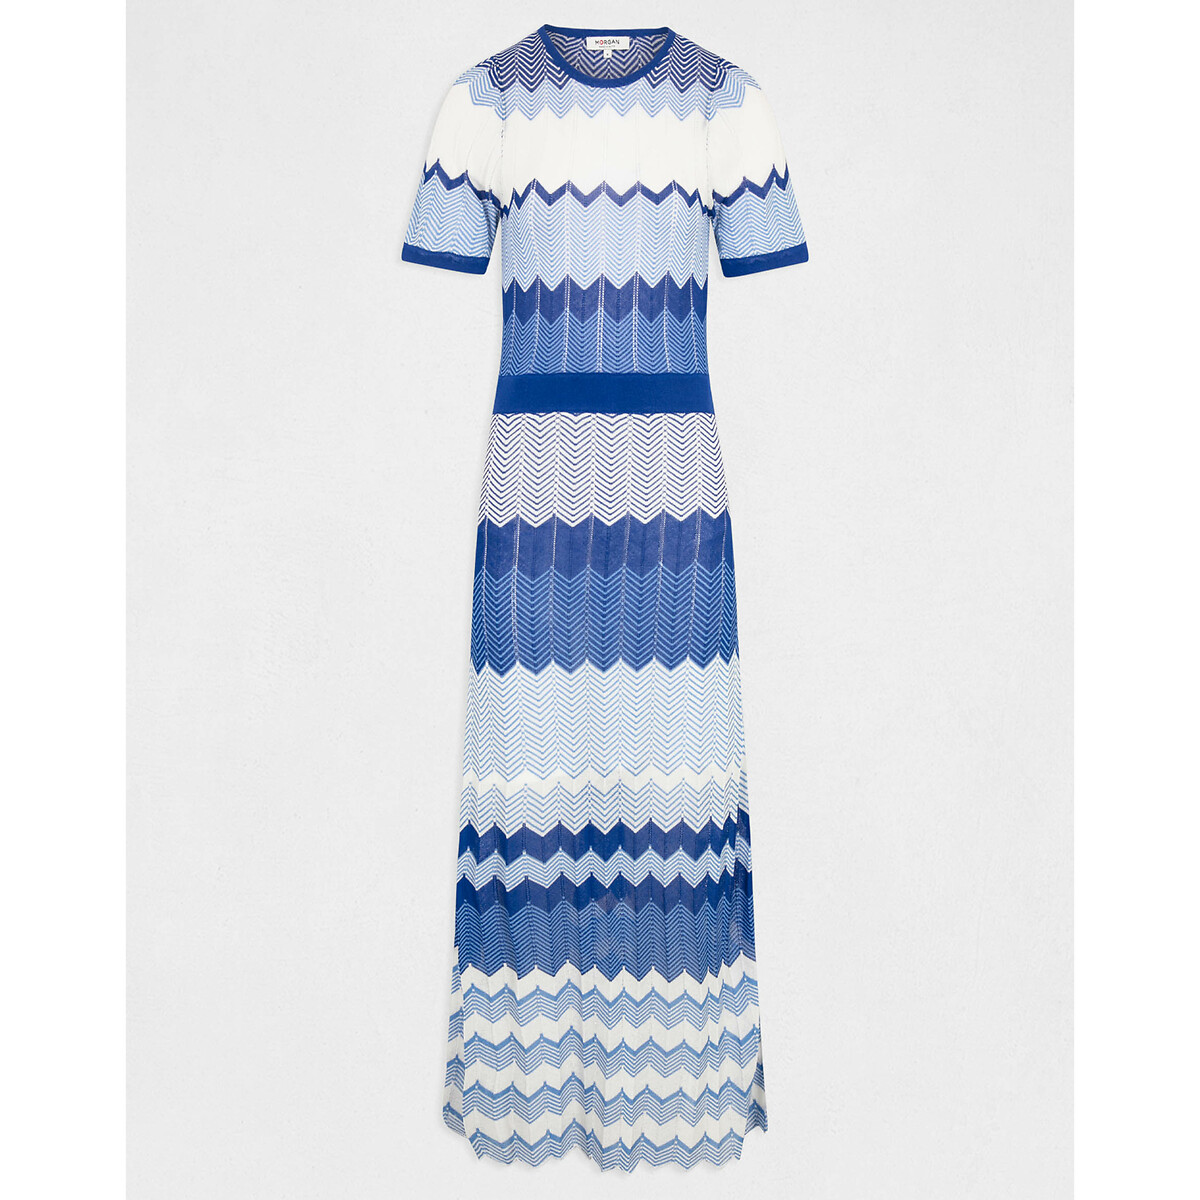 Платье-пуловер Длинное прямое с зигзагообразным принтом L синий LaRedoute, размер L - фото 5